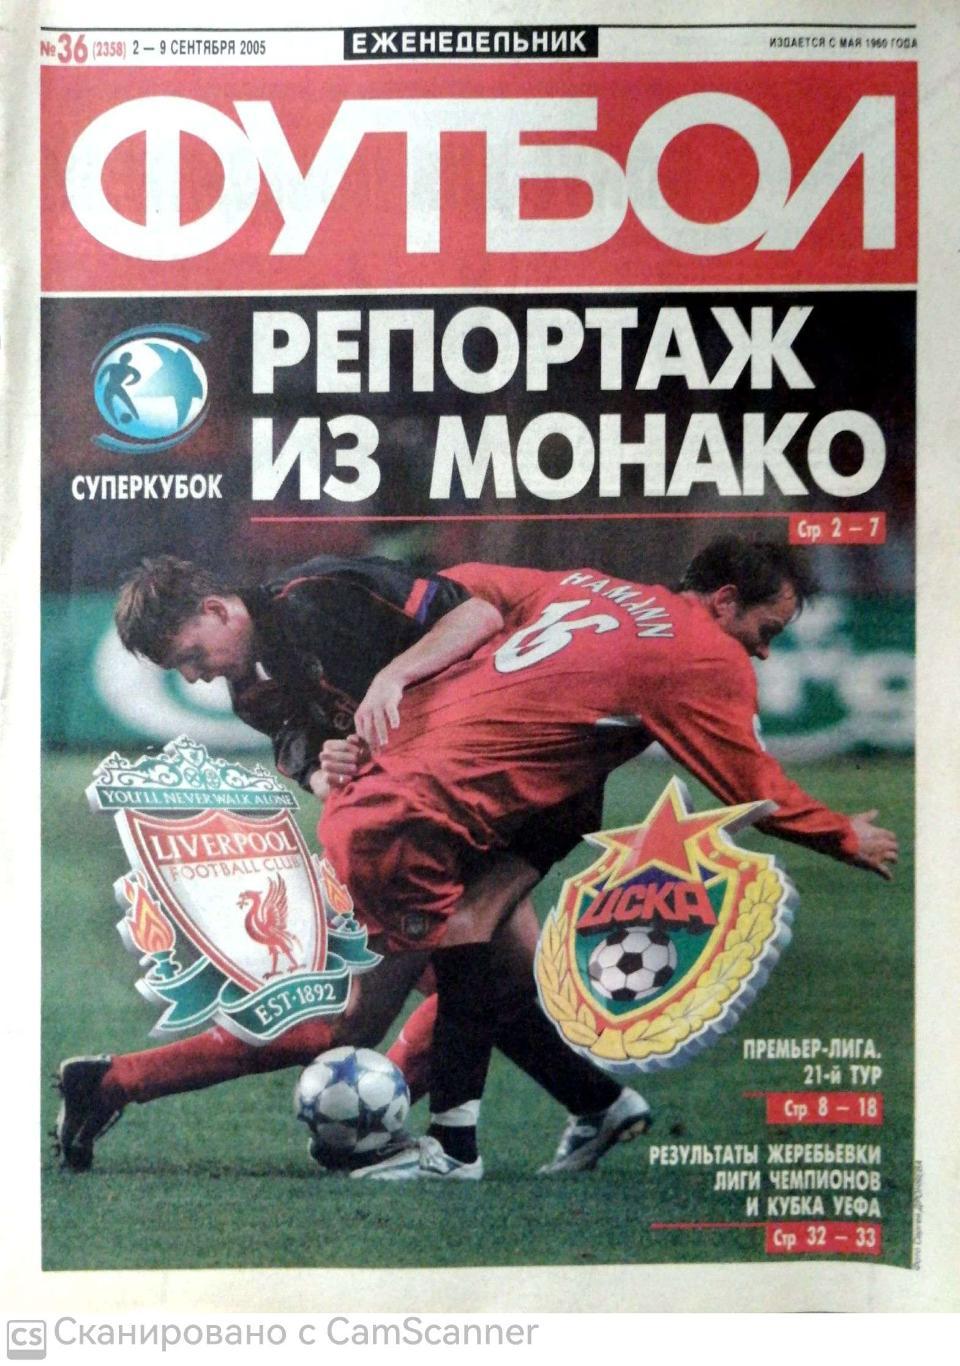 Еженедельник «Футбол» (Москва). 2005 год. №36 суперкубок цска-ливерпуль